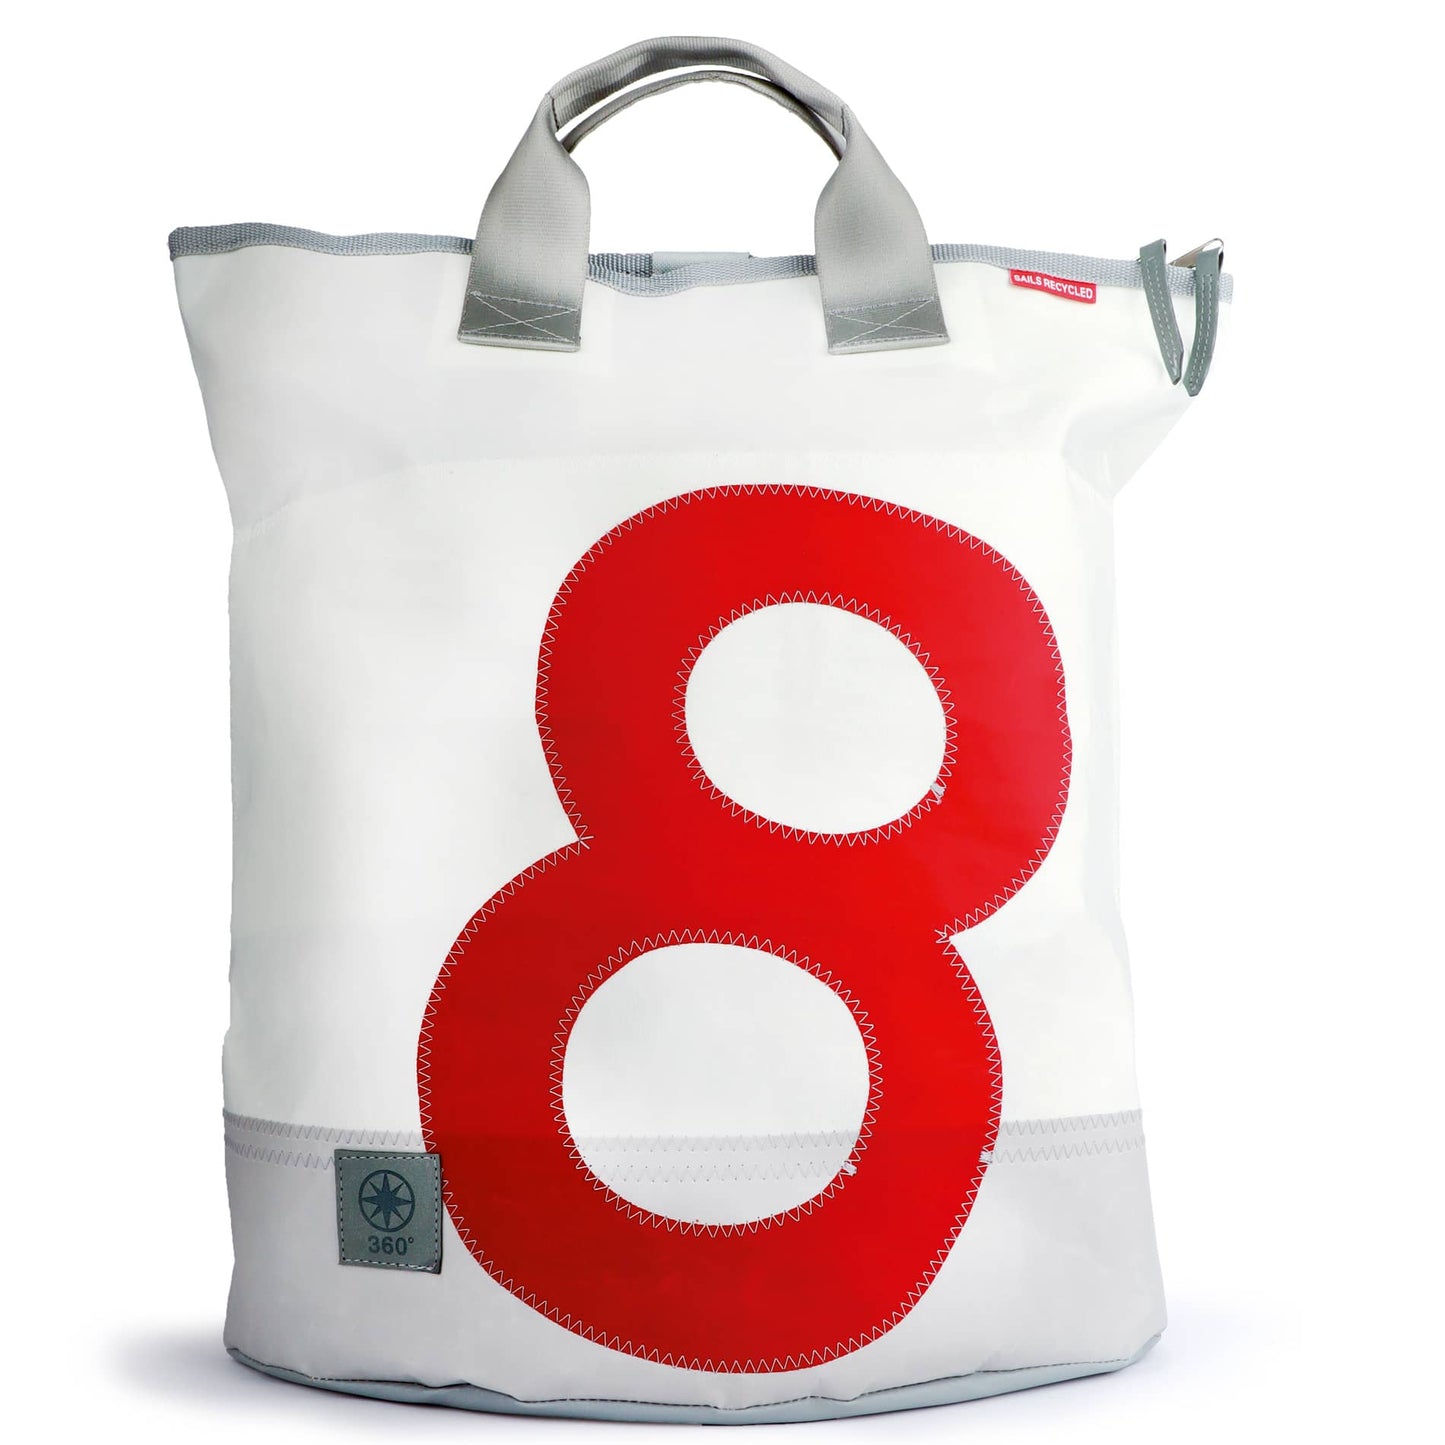 Einkaufstasche 360 Grad "Ketsch" / Segeltuch weiß grau / Motiv Zufallszahl rot